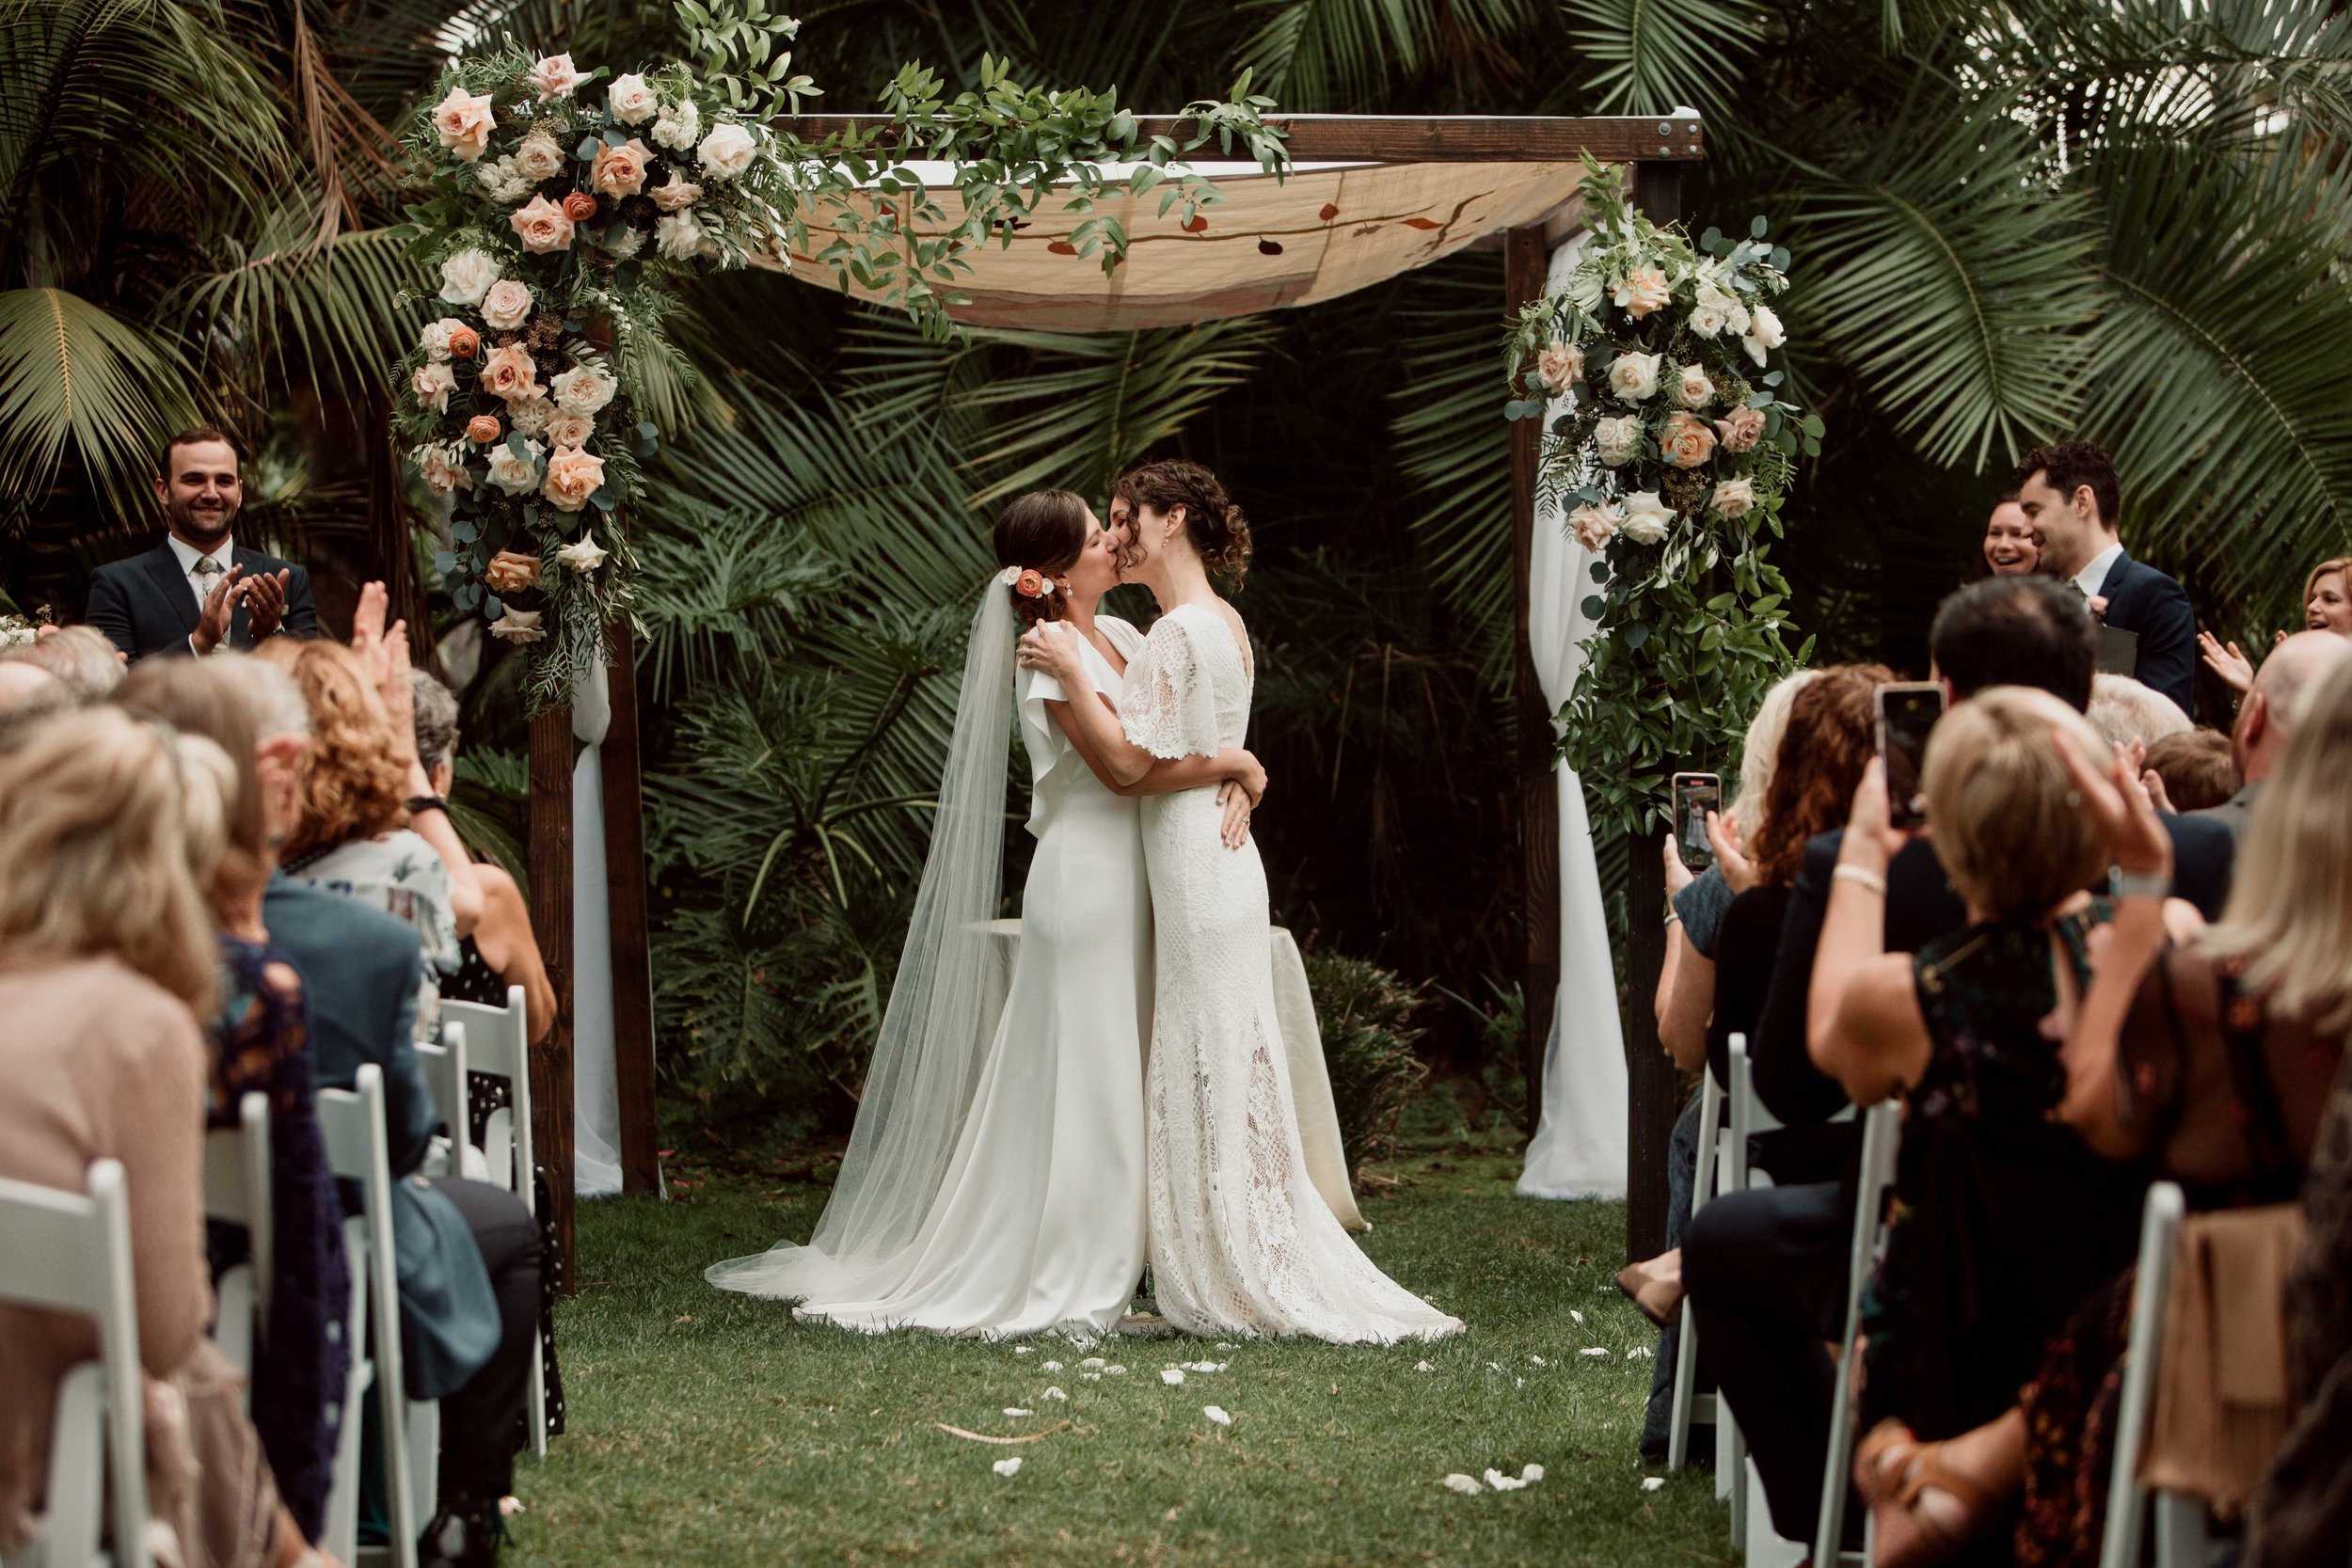 brides-wedding-sandiego.jpeg